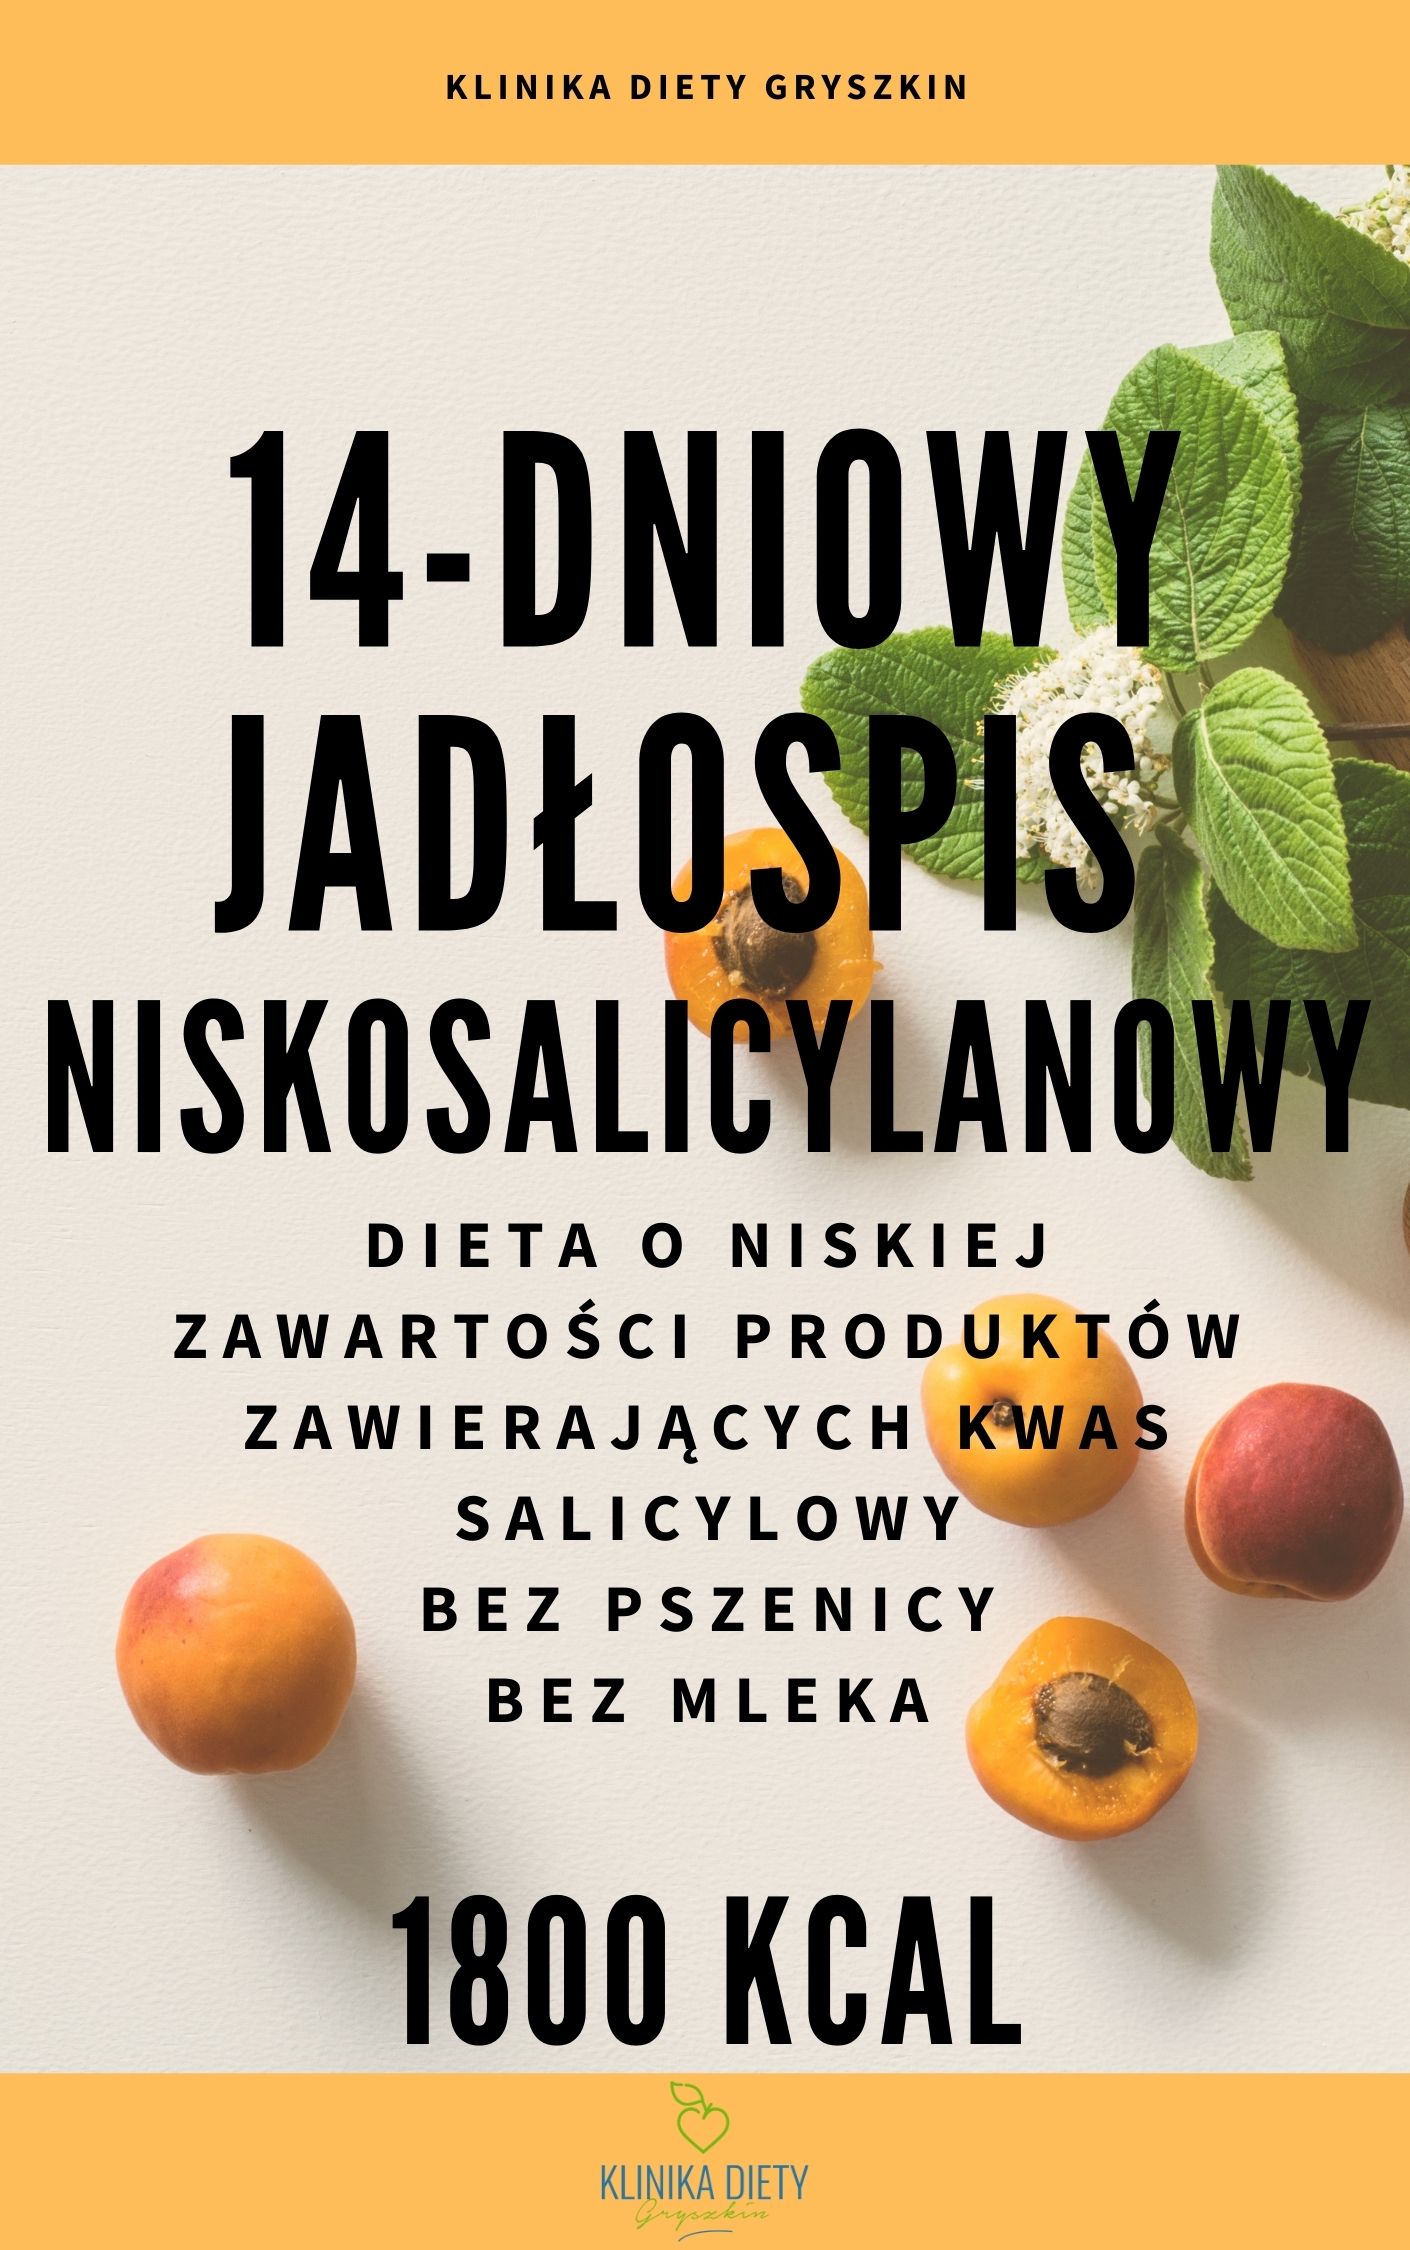 Gotowy 14dniowy jadłospis niskosalicylanowy Klinika Diety Gryszkin